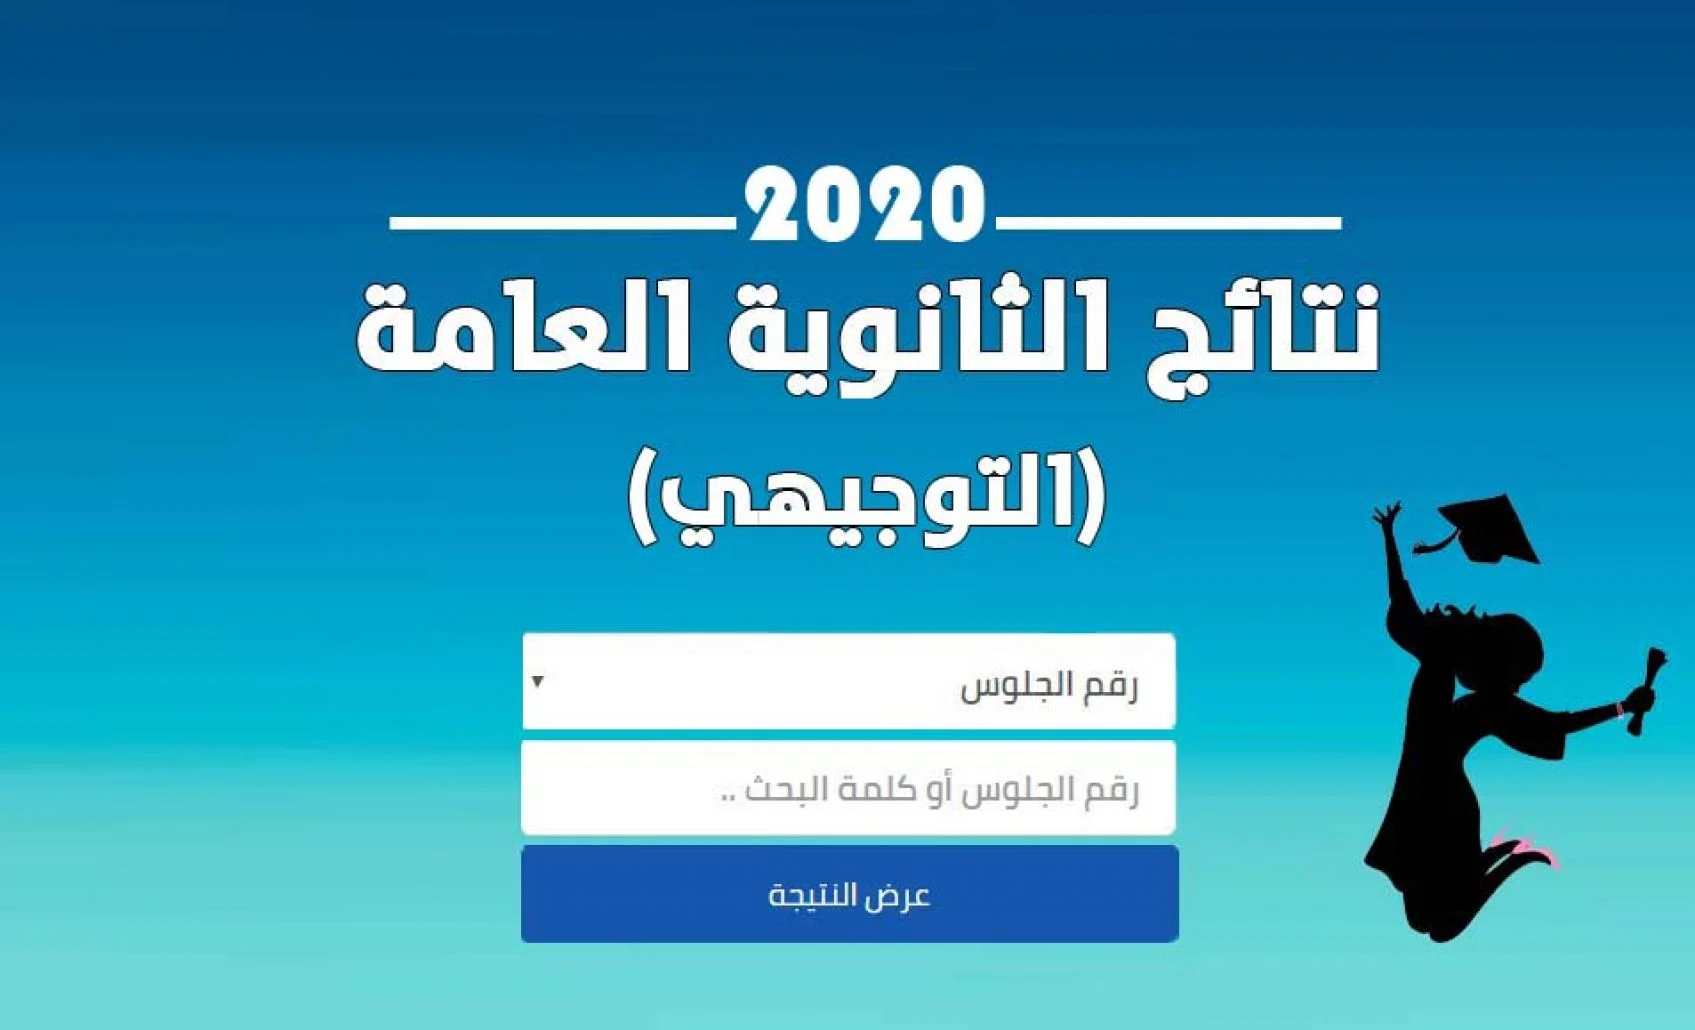 الآن على نتائج امتحانات الصف التوجيهي في الأردن لعام 2022 .webp - رابط استعلام نتائج التوجيهي في الأردن 2022 “الثانوية العامة في الأردن” برقم الجلوس